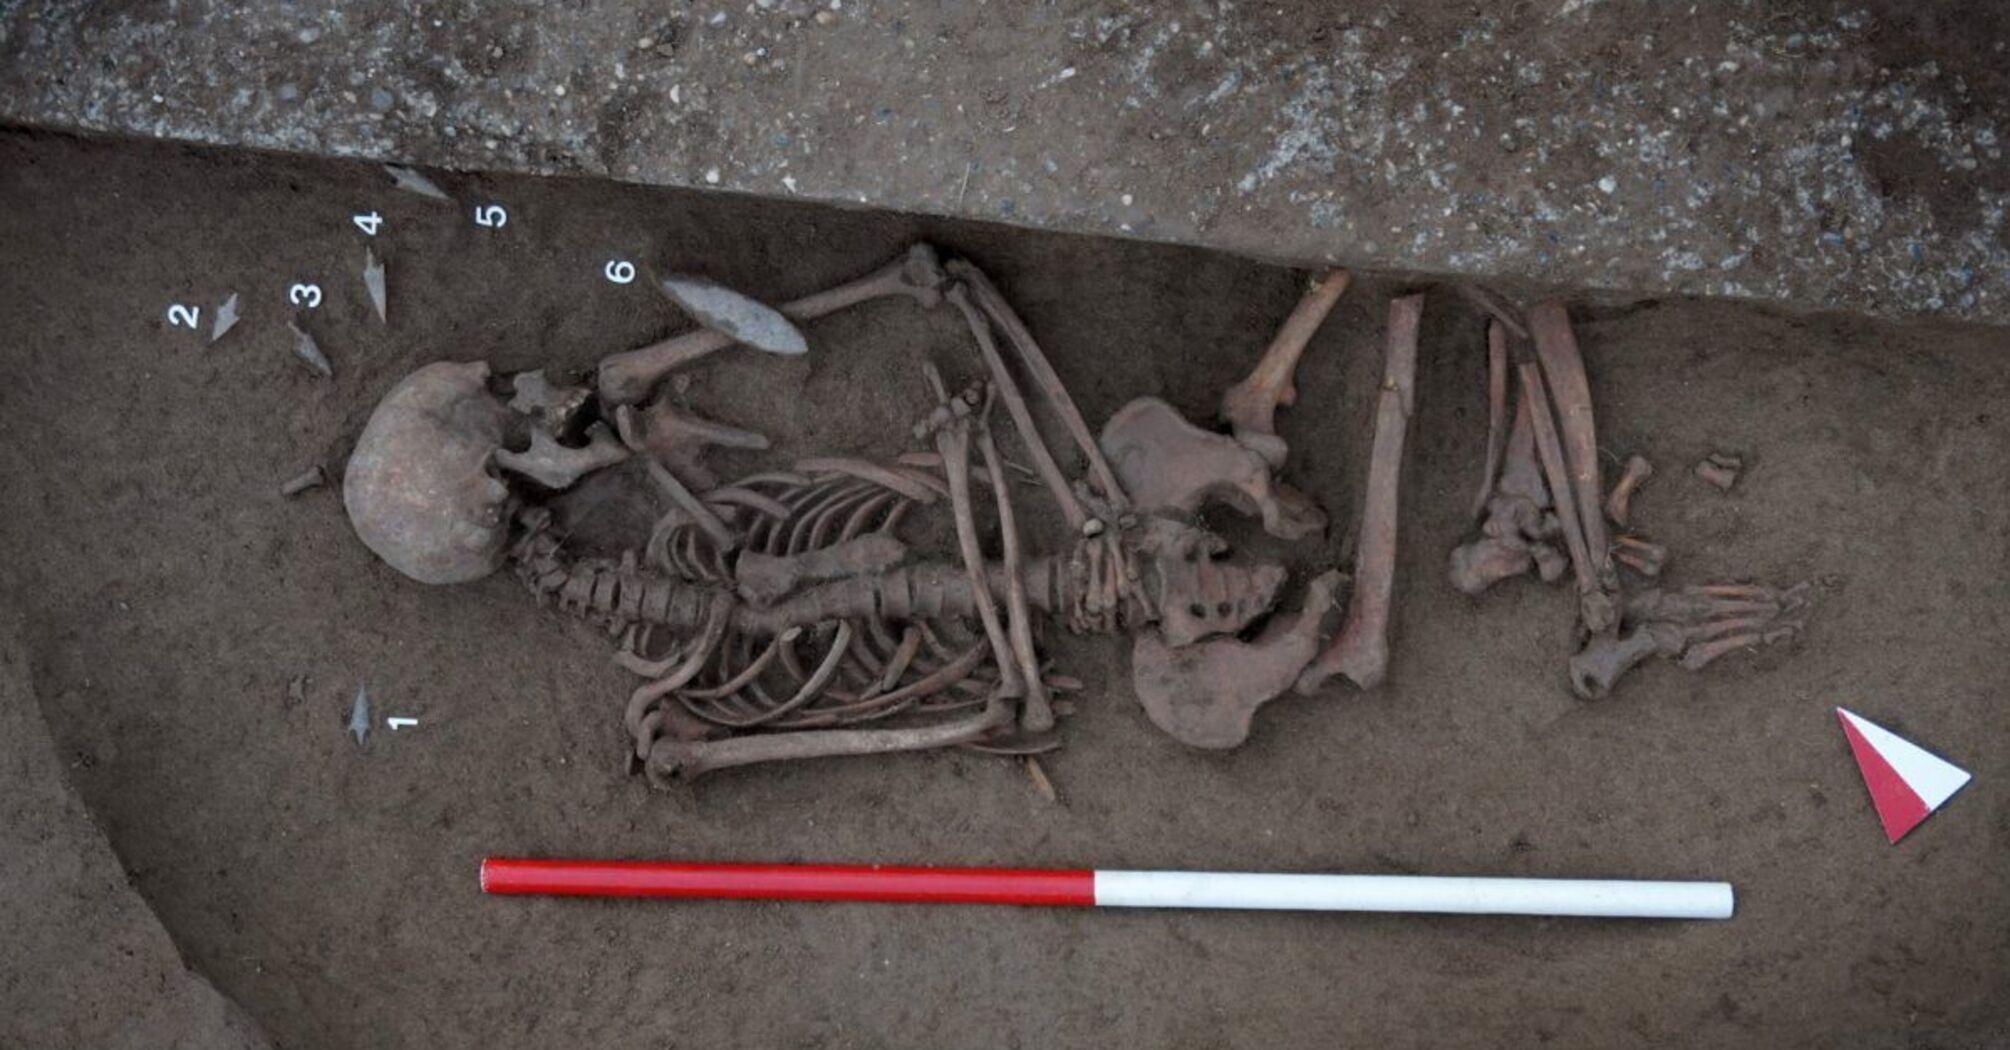 Copper Age necropolis found in Italy